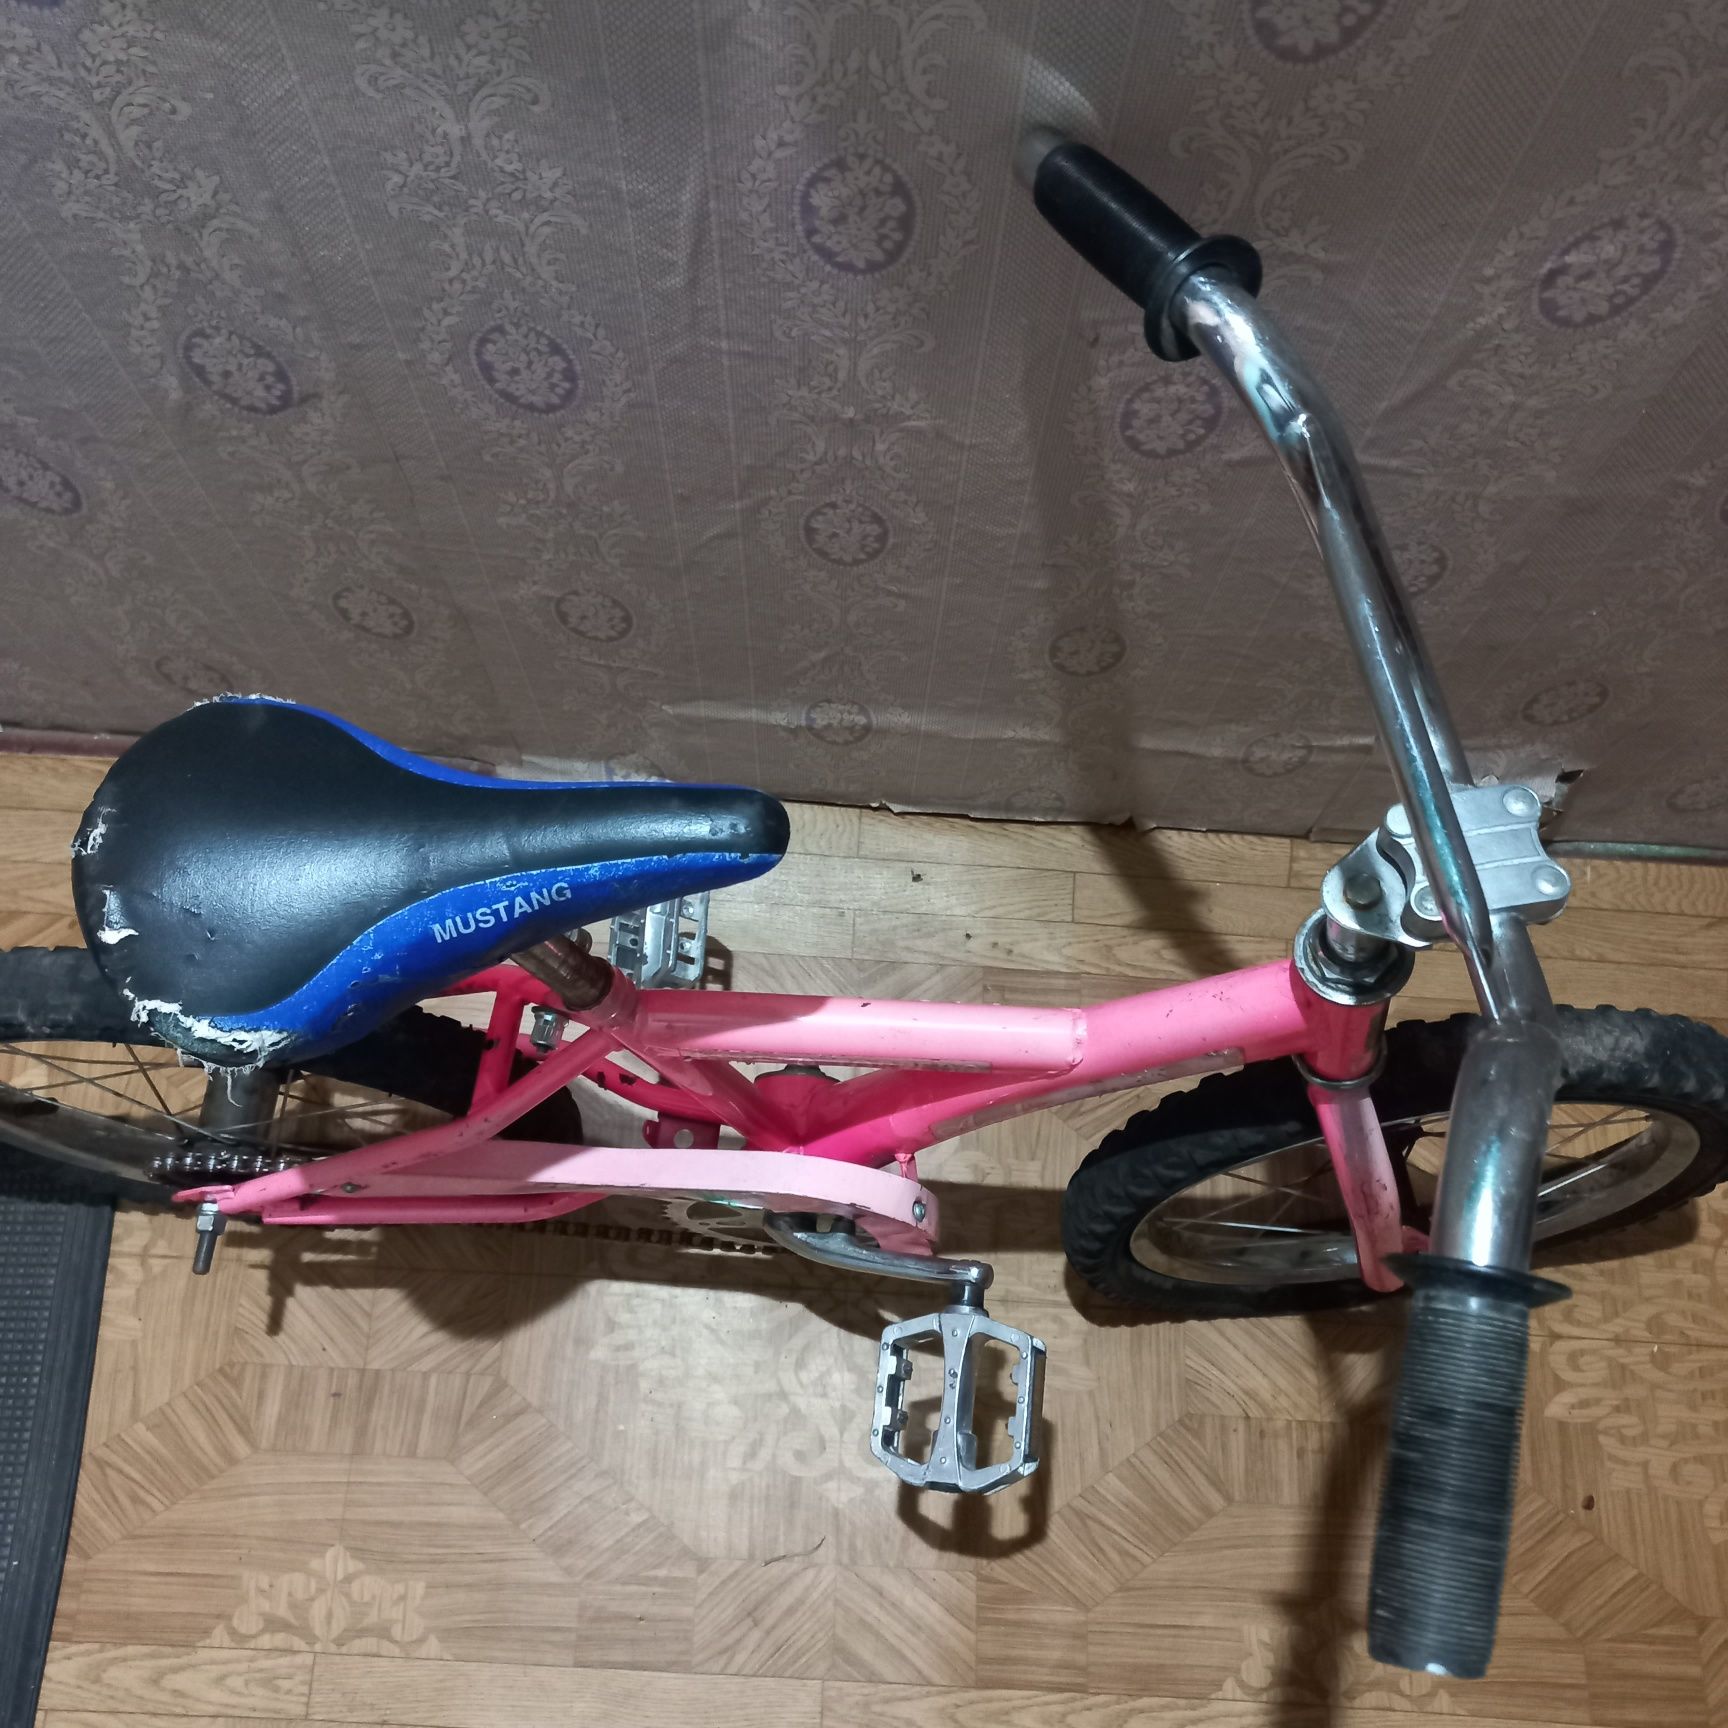 Детский велосипед для ребенка 4-8  лет